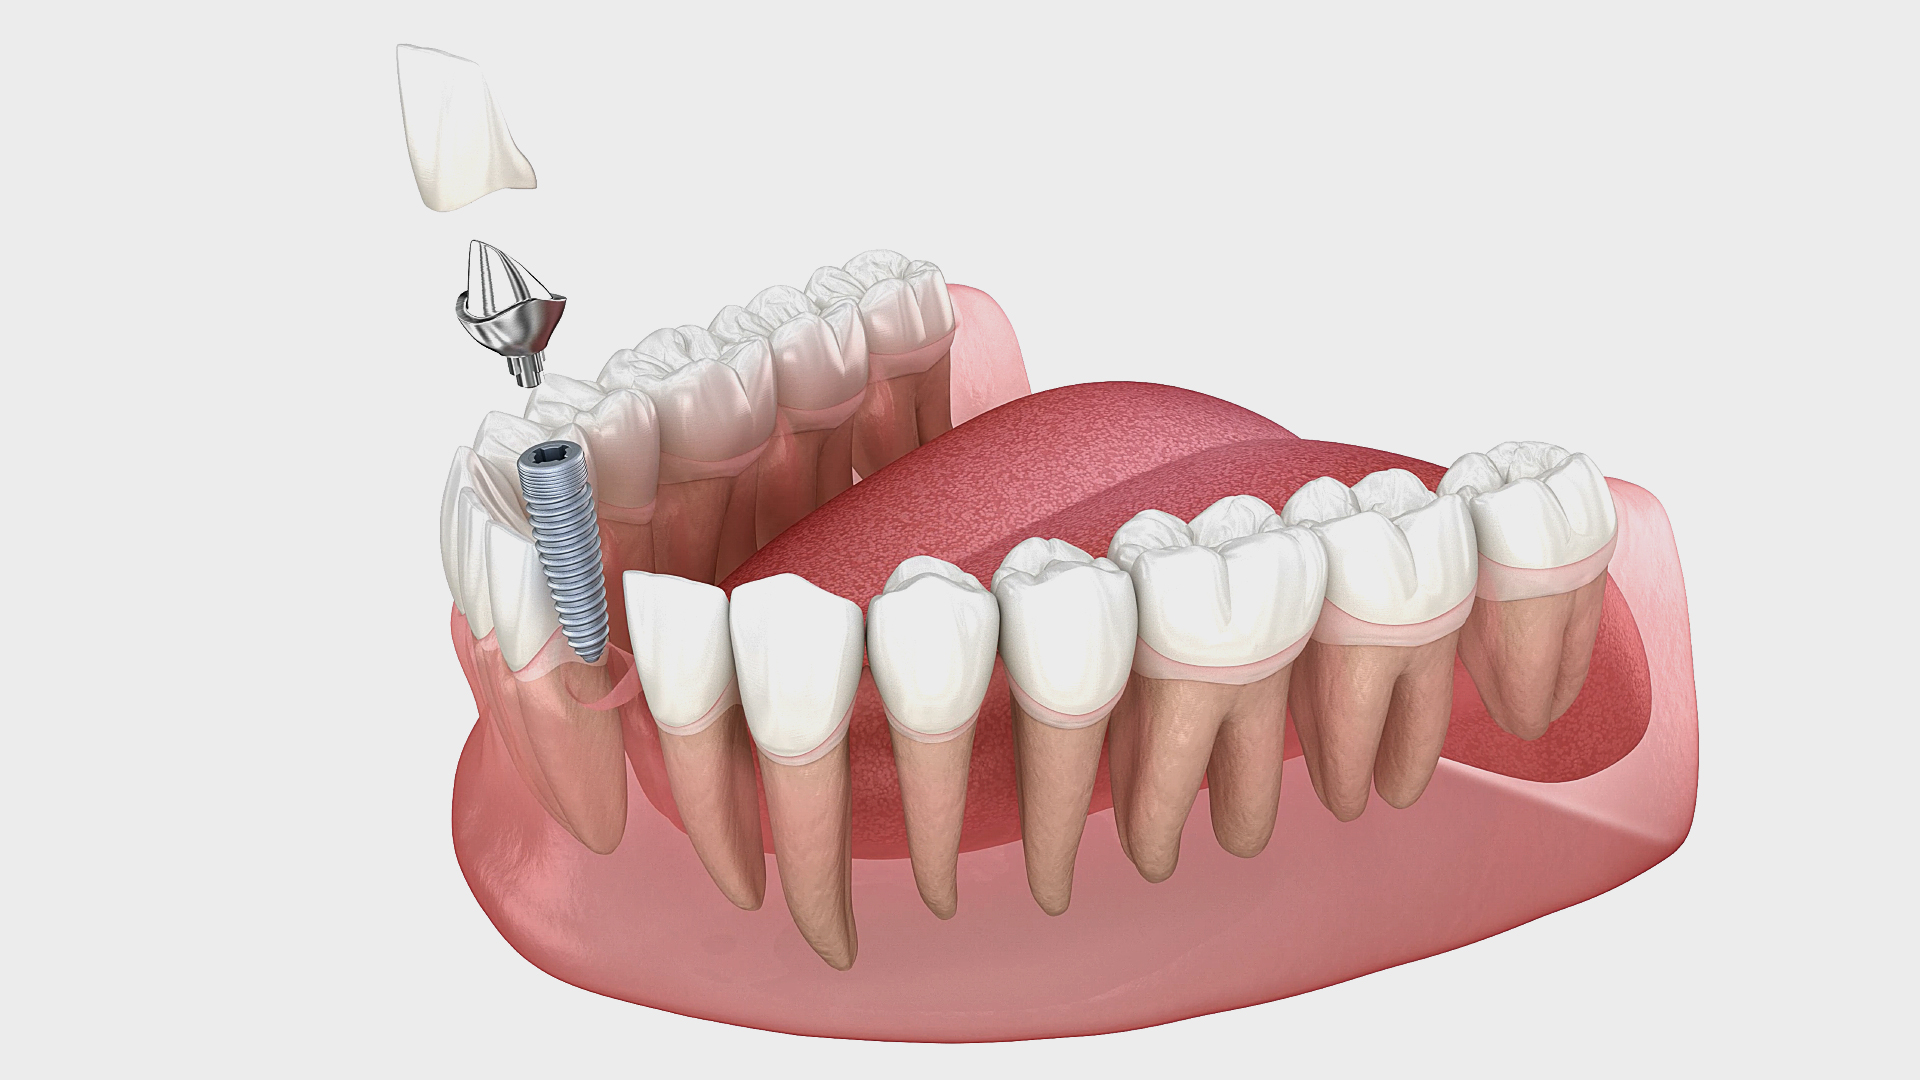 Mini-implant dentaire à vis - Tous les fabricants de matériel médical